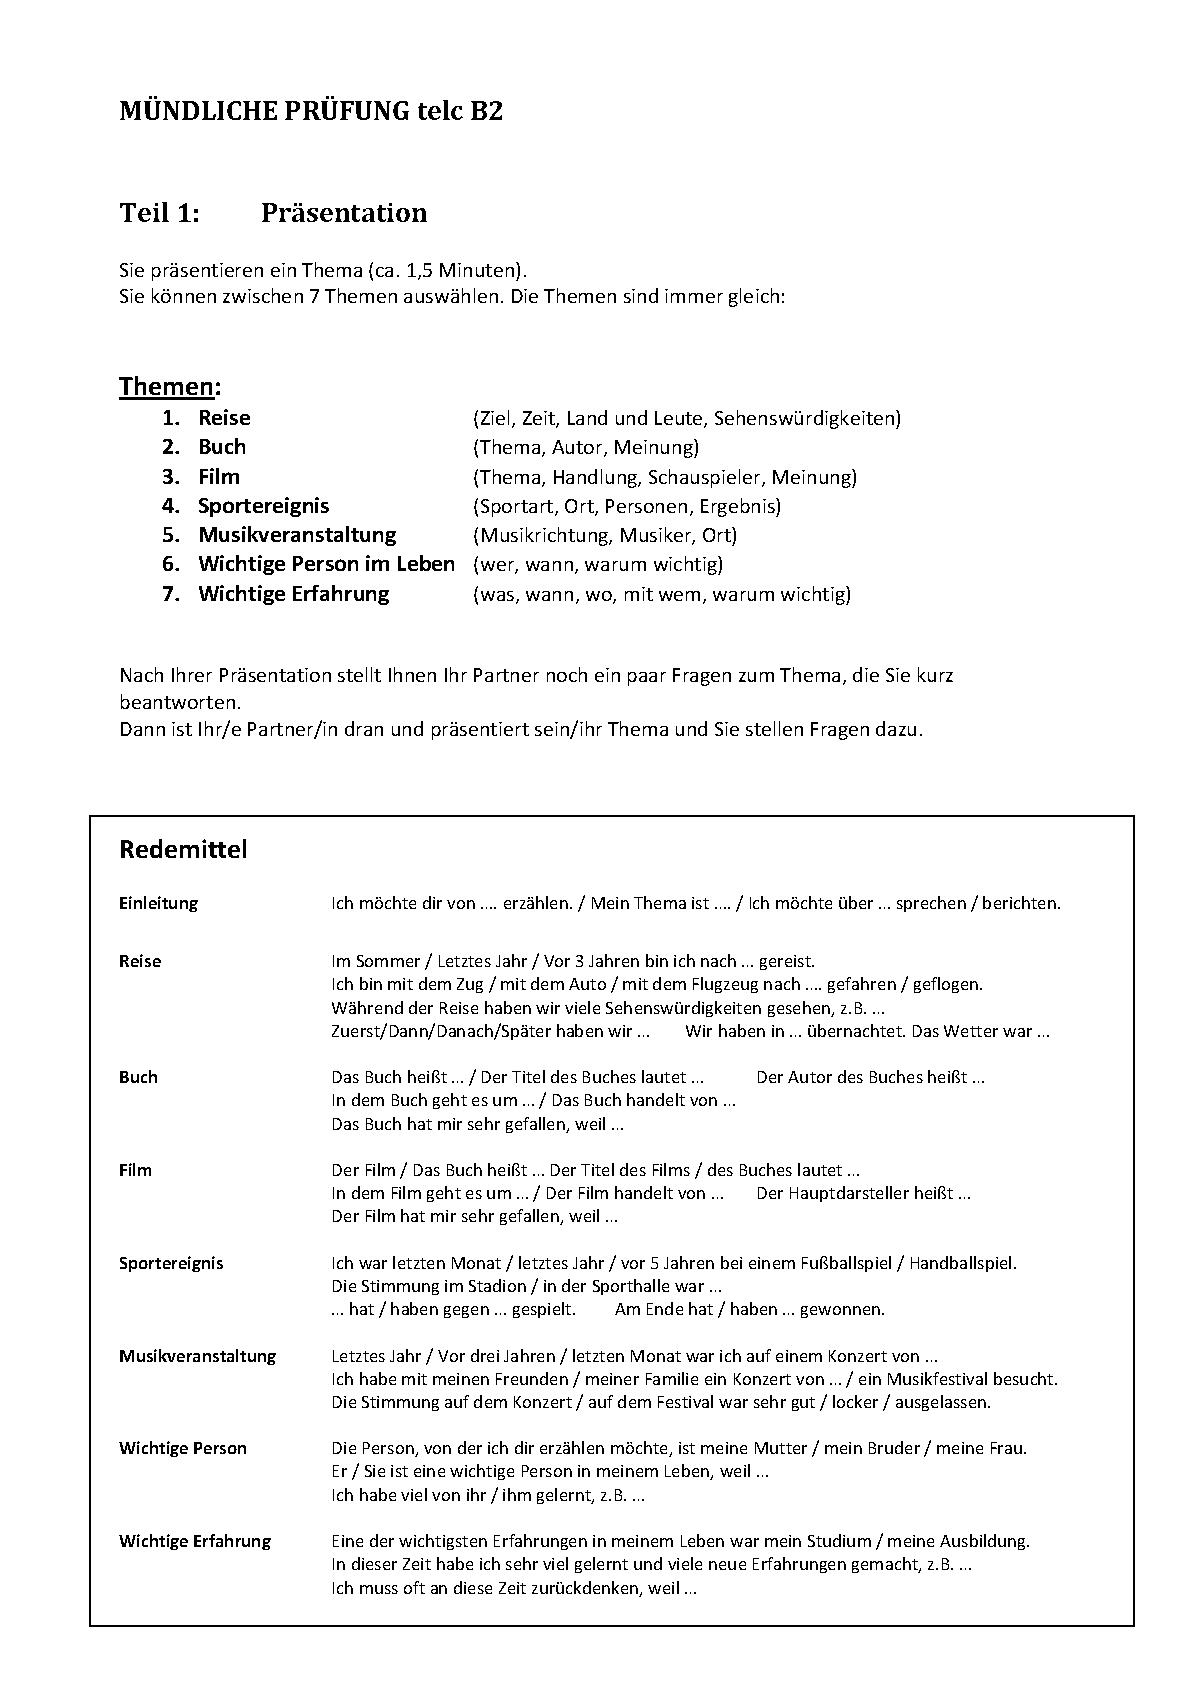 telc B2 Redemittel und Beispiele Mündliche Prüfung pdf PDF Host